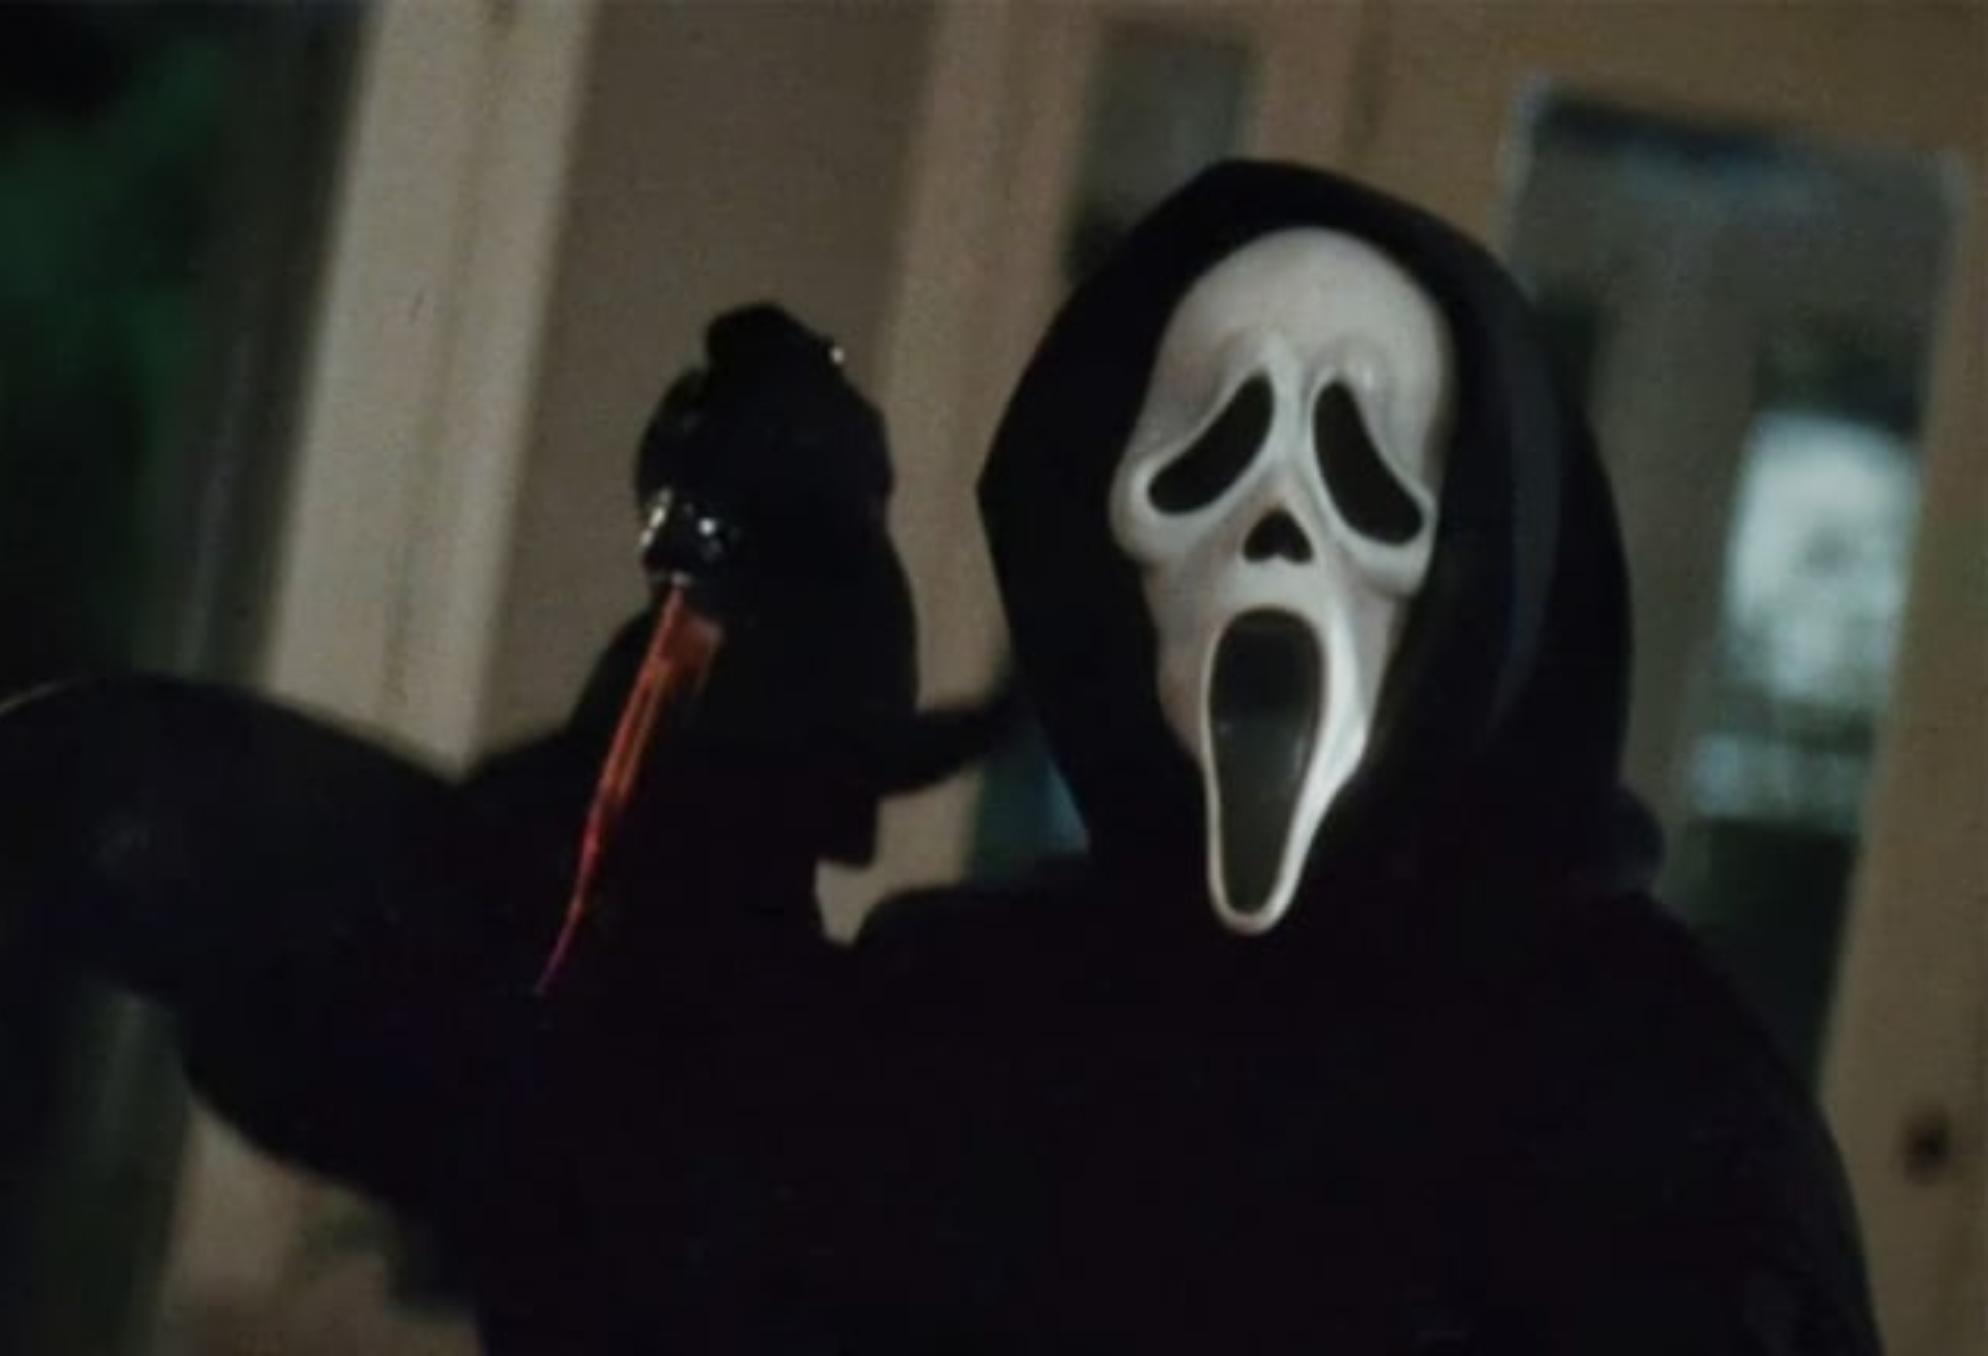 Η αληθινή ιστορία πίσω από τις ταινίες Scream: Ντάνι Ρόλινγκ η The Gainesville Ripper ο ψυχοπαθής κατά συρροή δολοφόνος που έσφαξε 5 φοιτητές